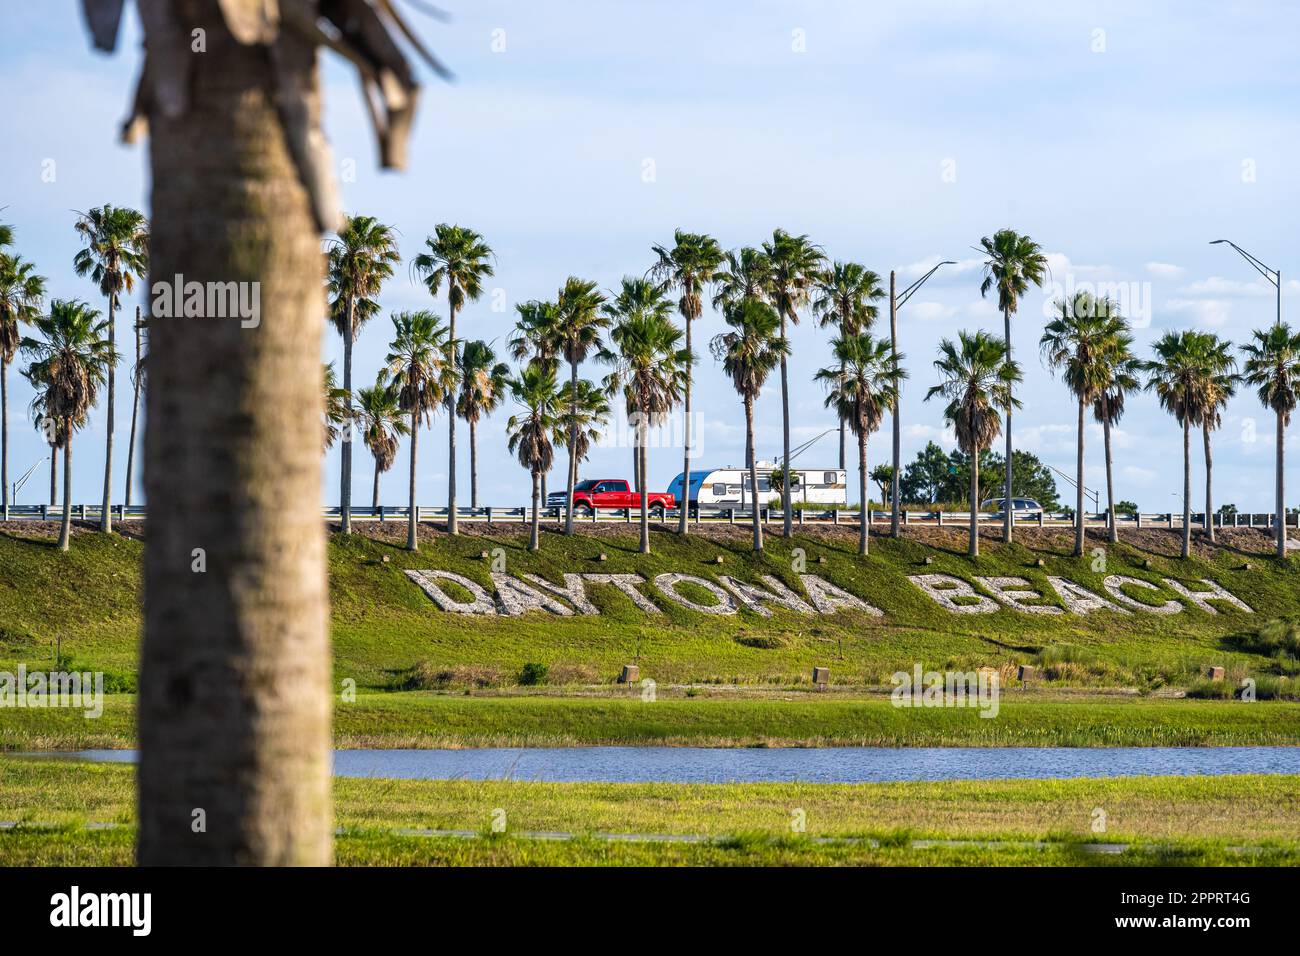 Le célèbre logo de Daytona Beach, situé sous une rangée de palmiers, accueille les voyageurs le long de l'I-95 au LPGA Boulevard à Daytona Beach, en Floride. (ÉTATS-UNIS) Banque D'Images